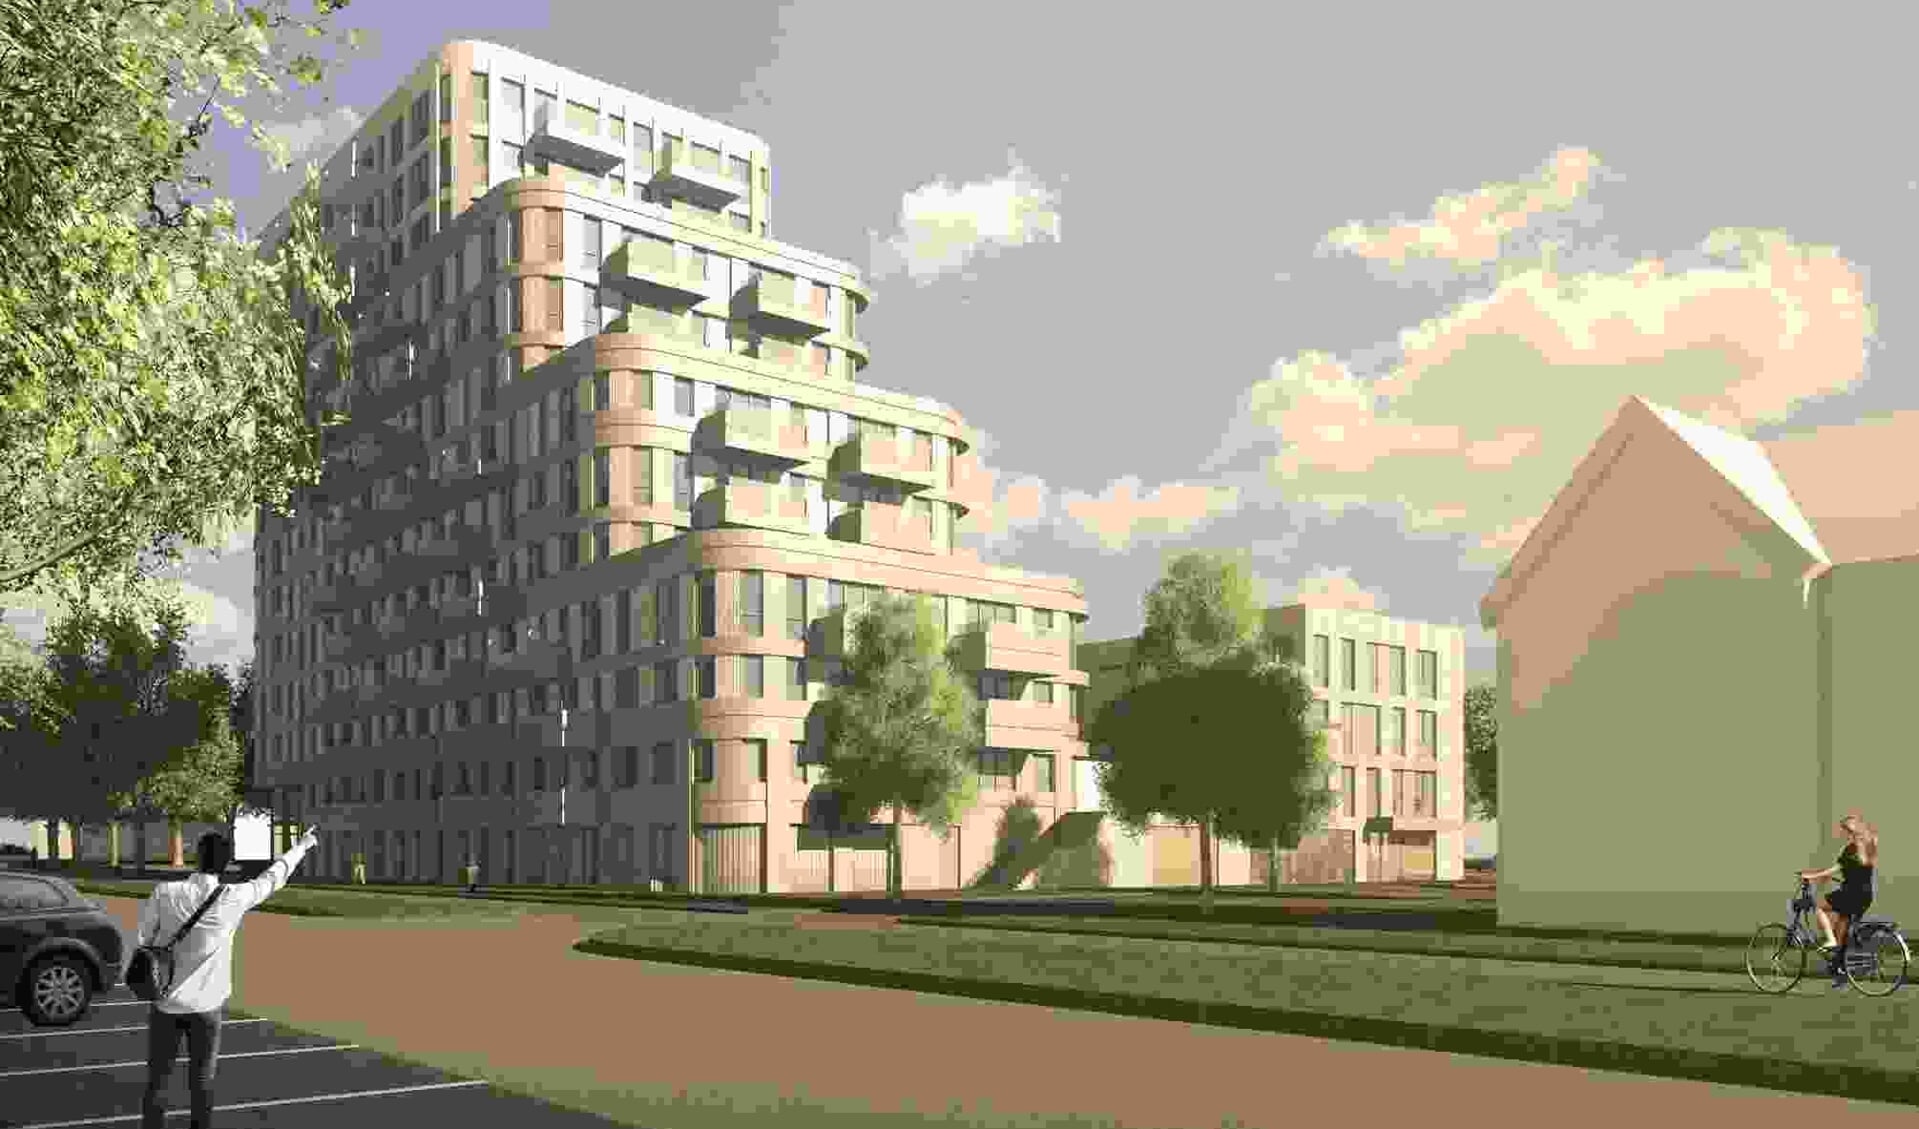 Het voorlopige ontwerp van het appartementengebouw dat aan de Startbaan moet verrijzen.